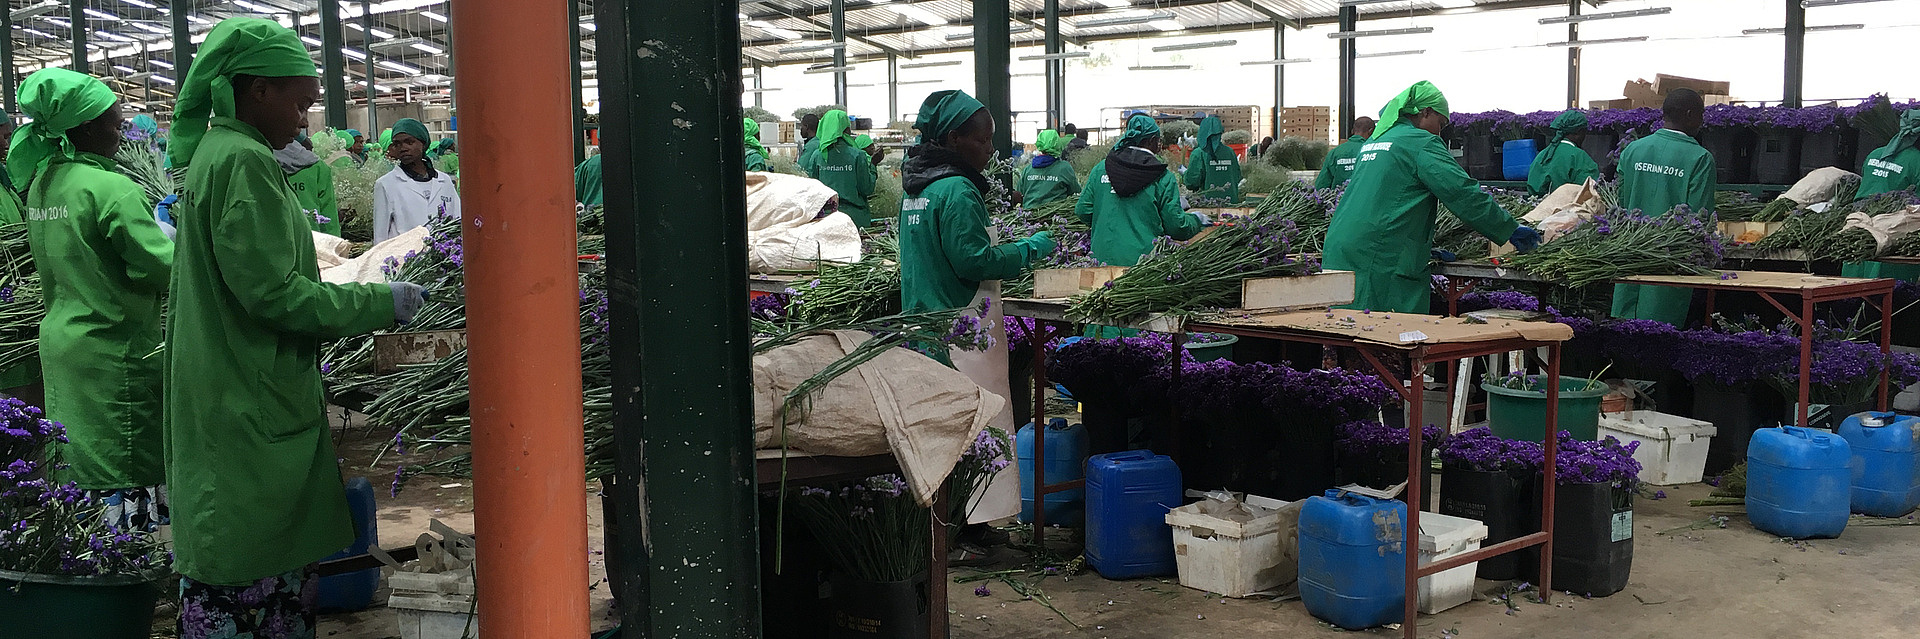 Arbeitende auf einer Blumenfarm in Kenia